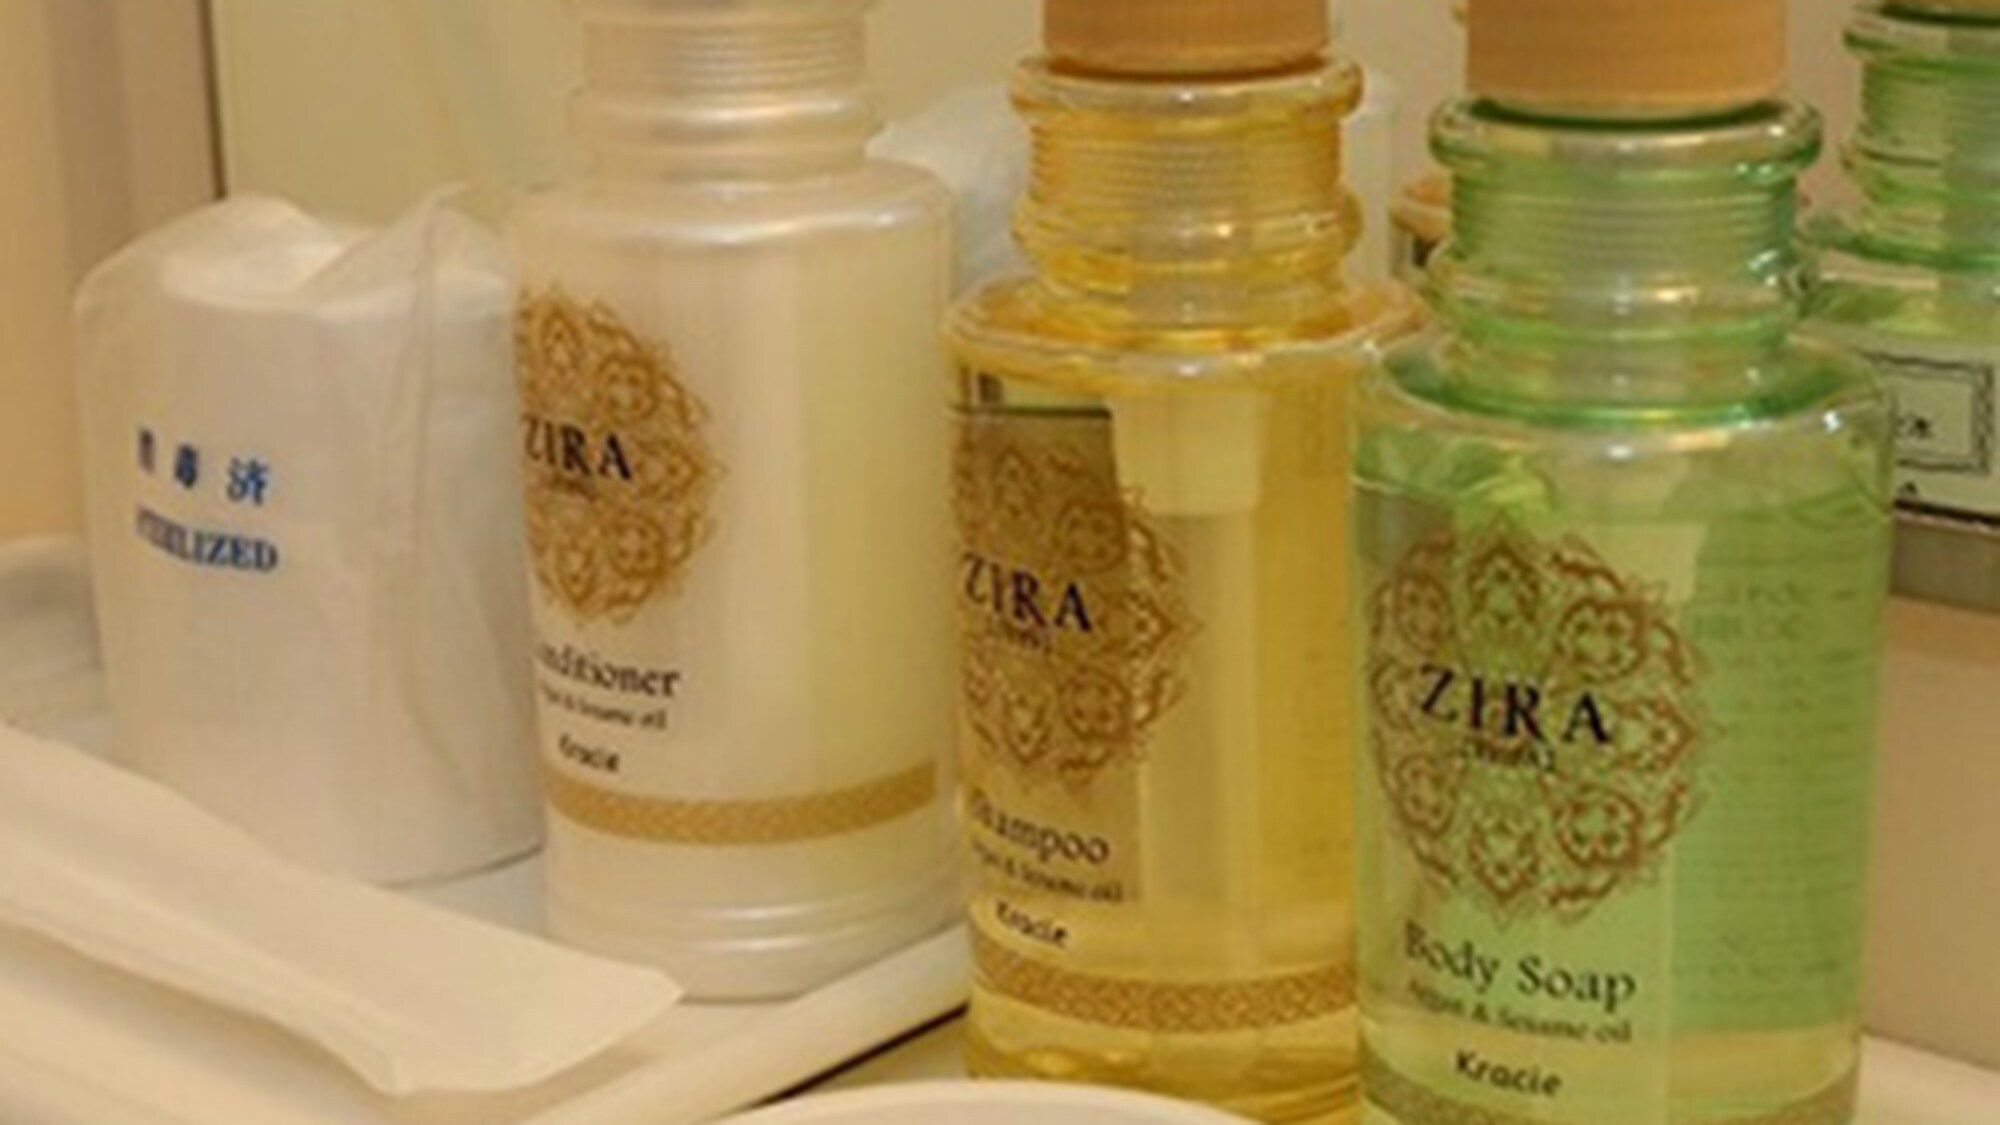 ・ Shampoo, conditioner, body soap